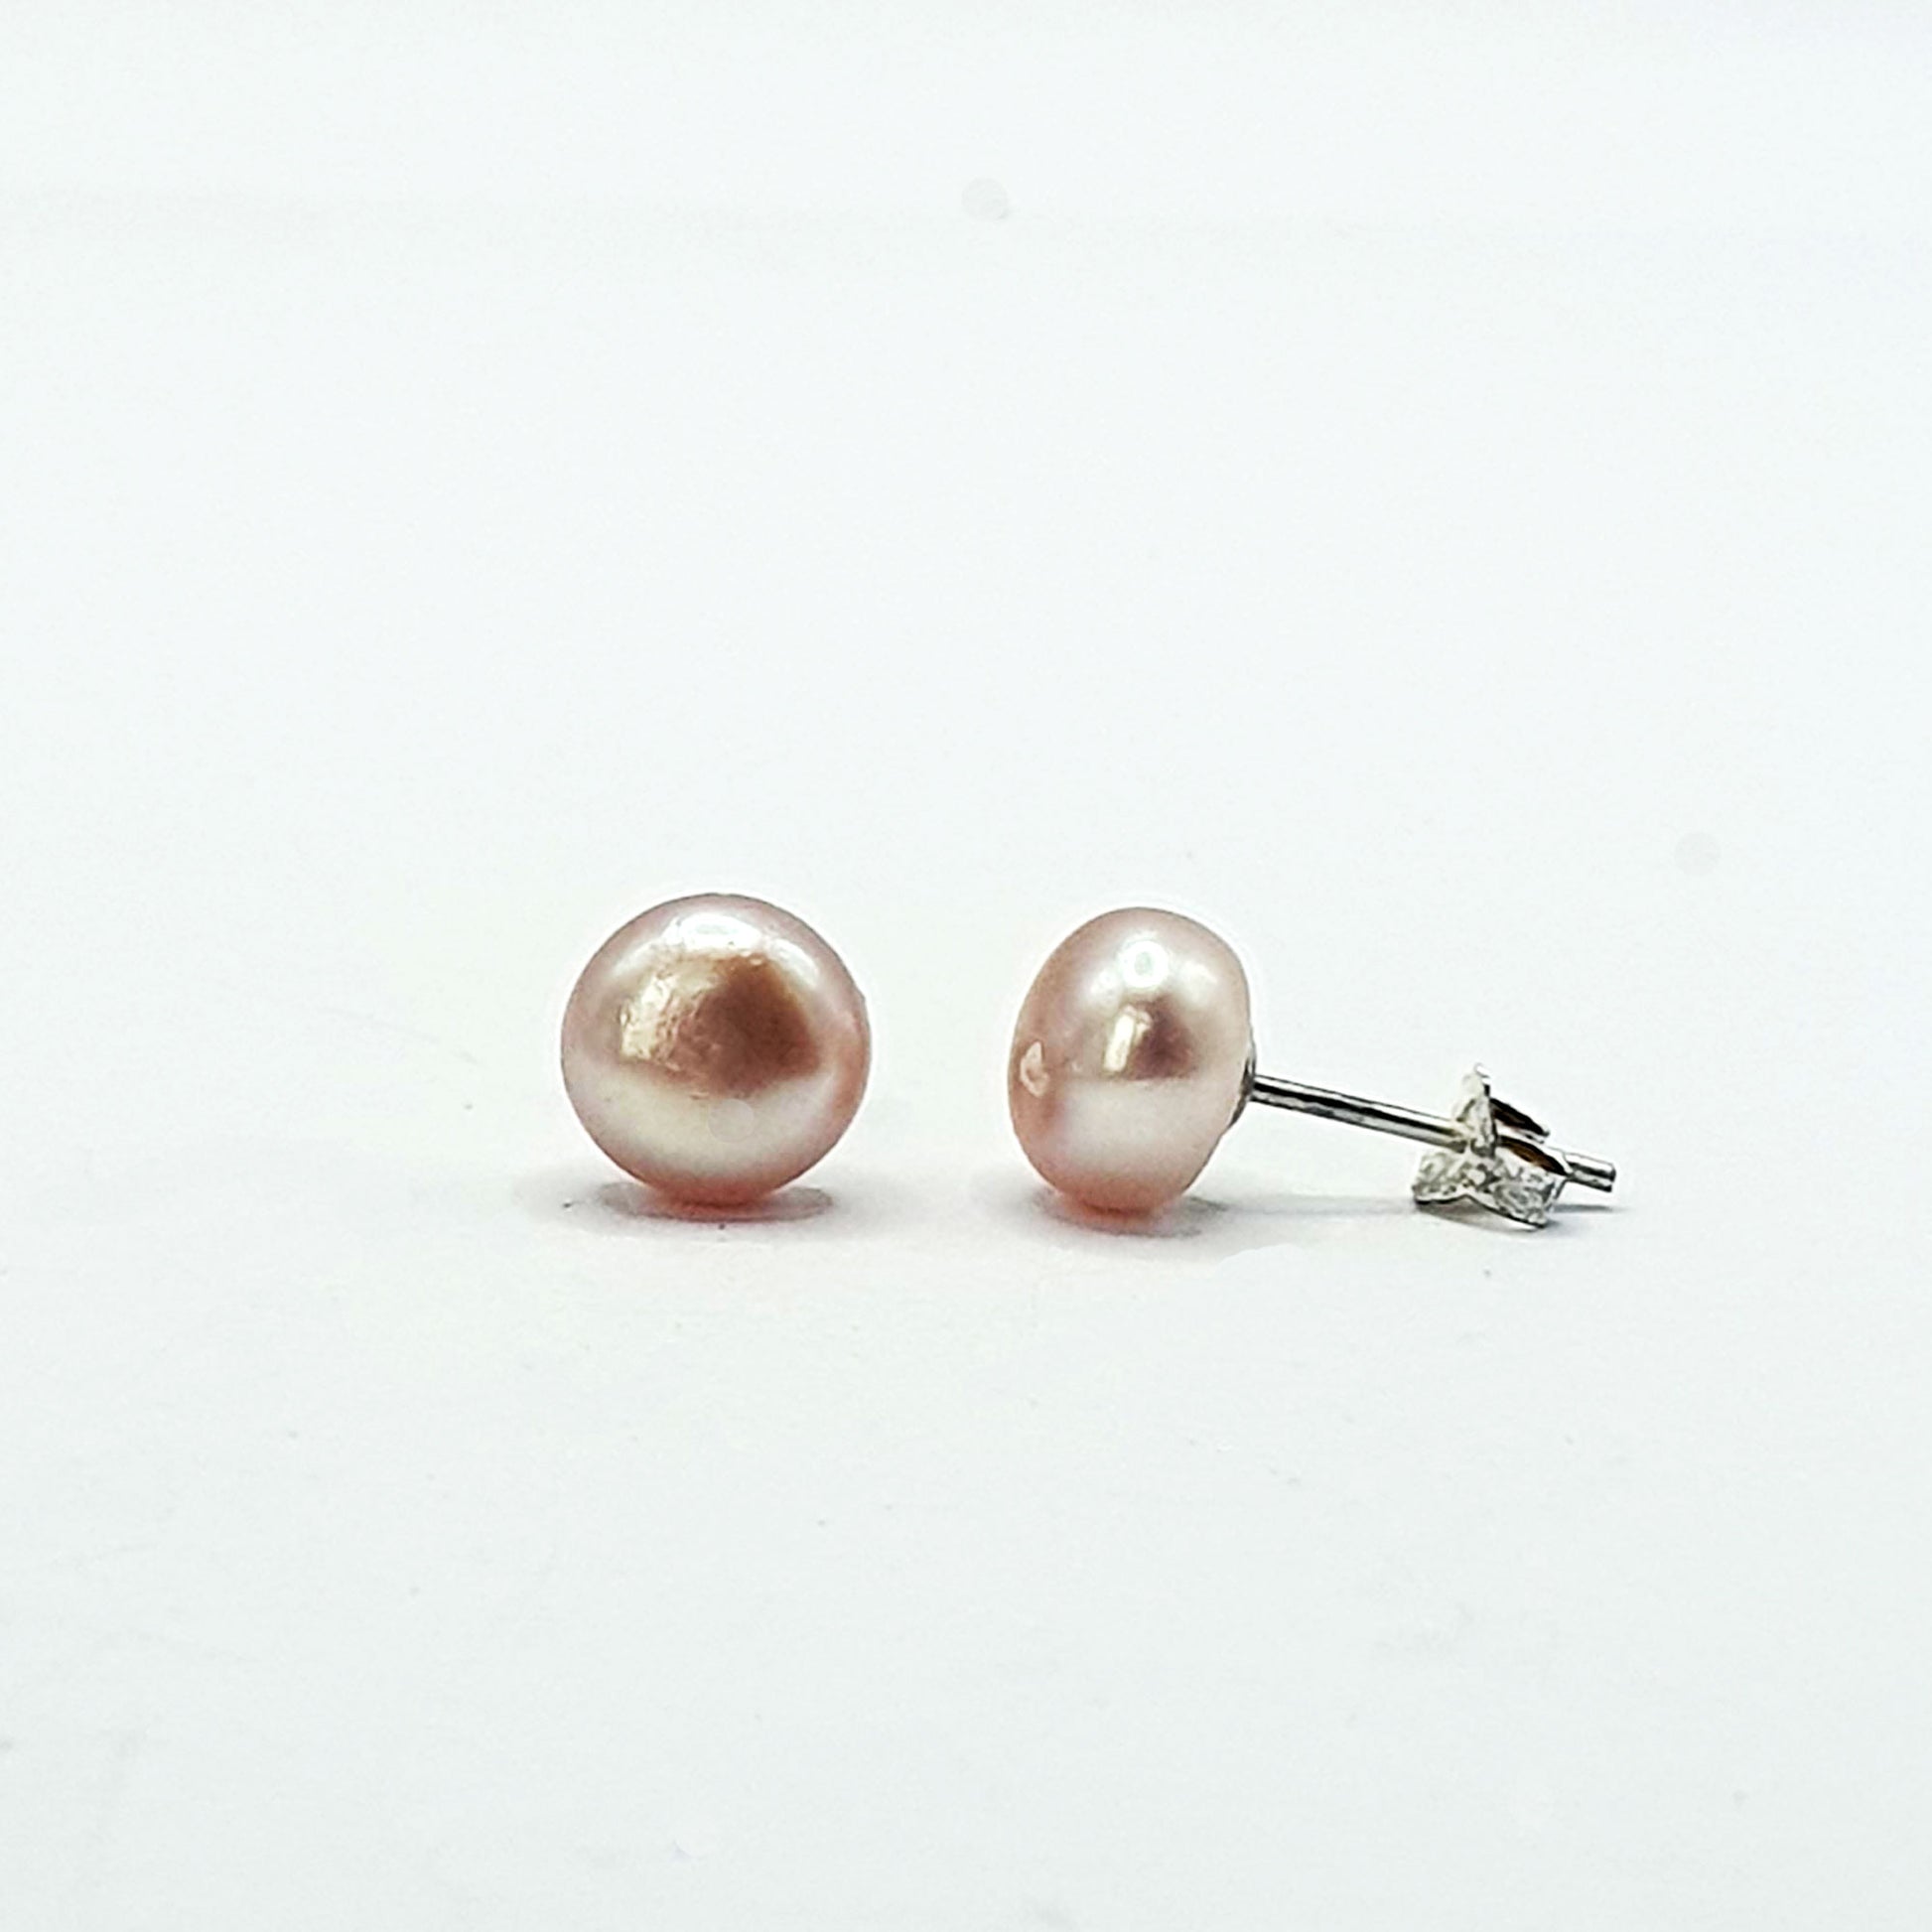 Pink freshwater pearl stud earrings